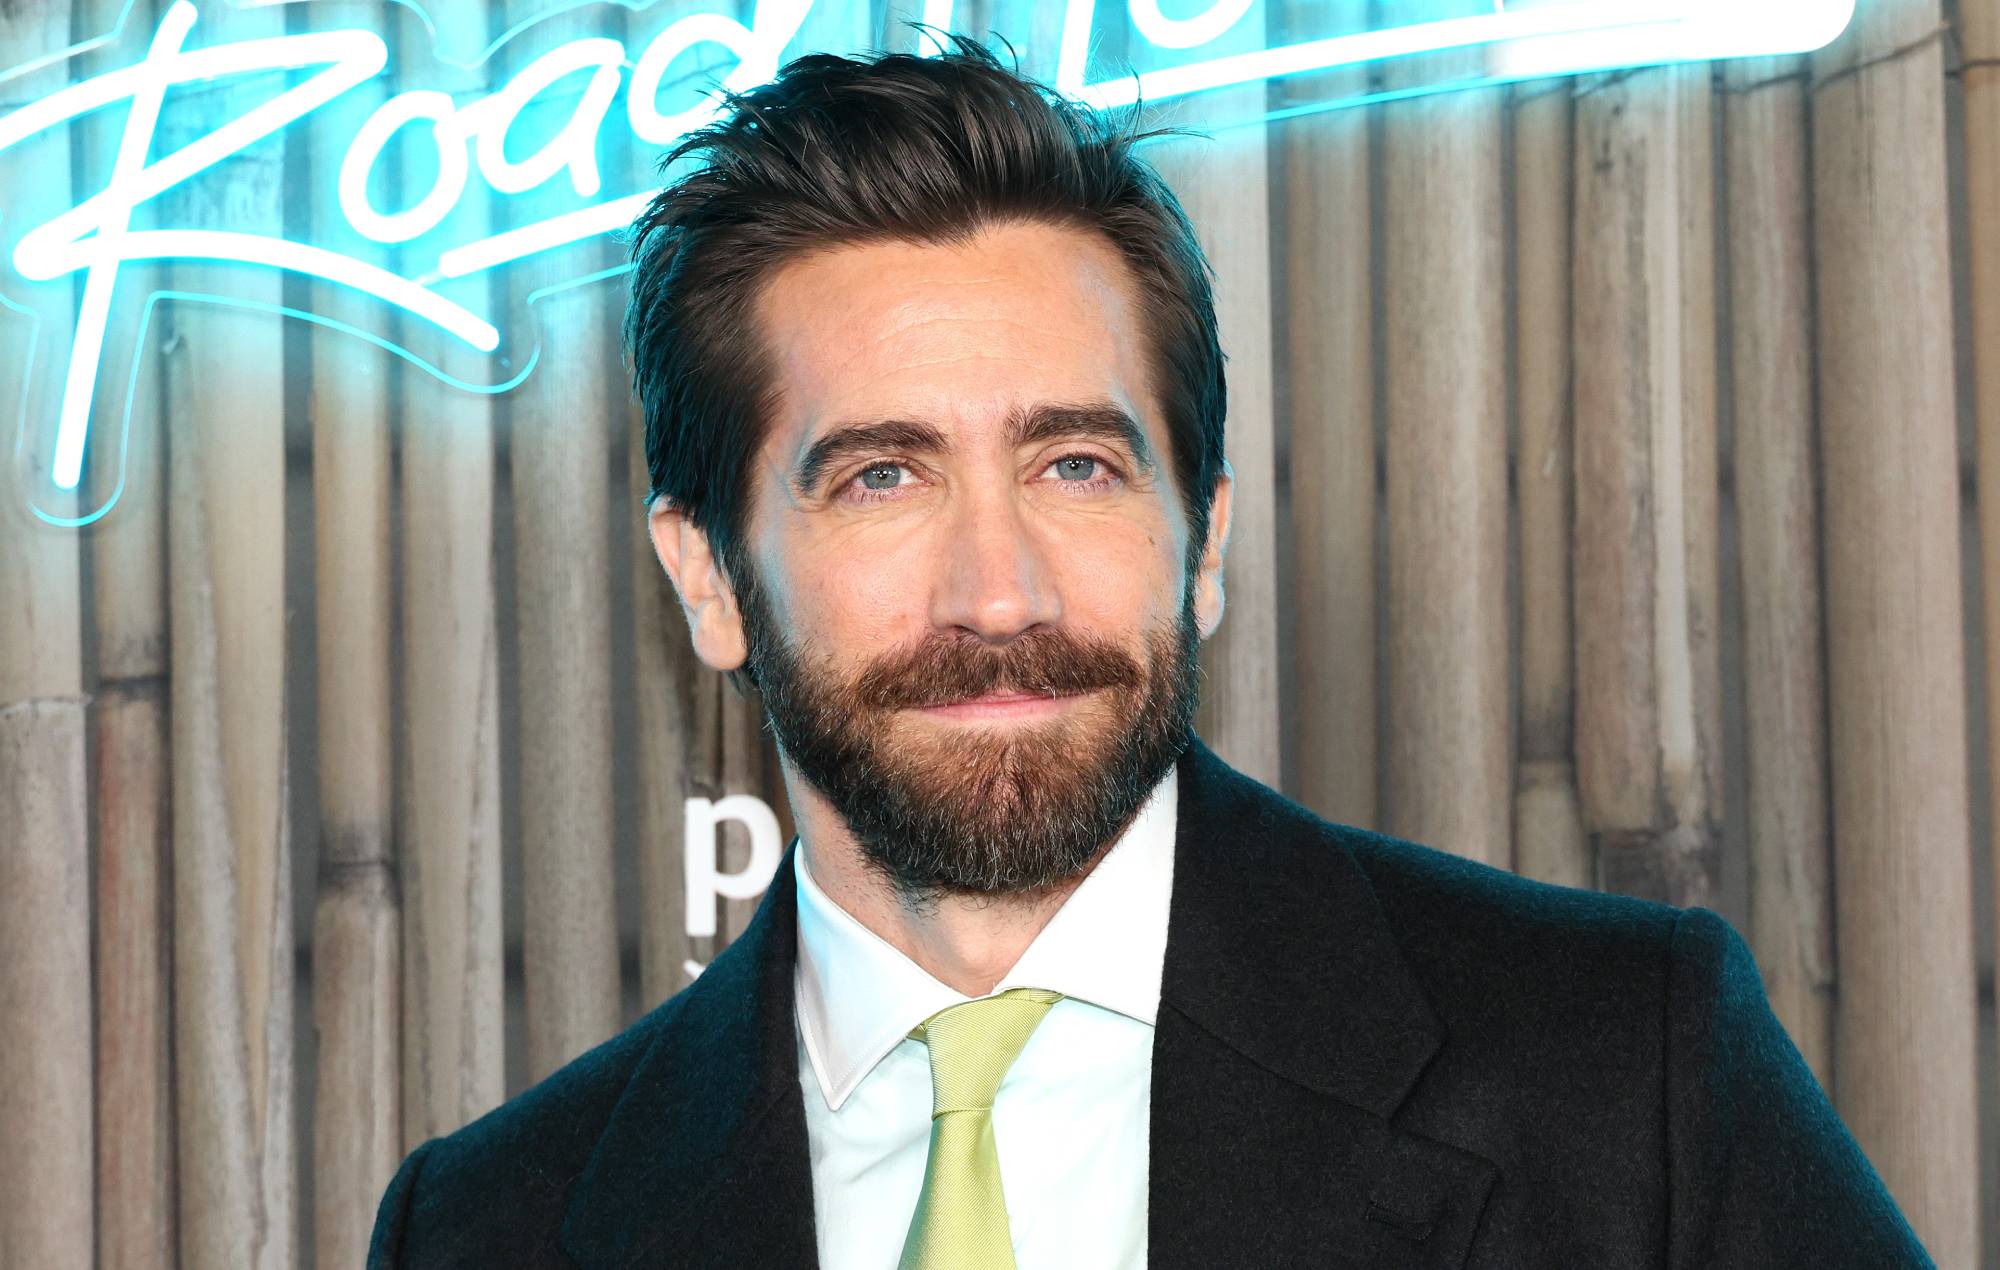 Jake Gyllenhaal habla de ser legalmente ciego en Hollywood: "Es ventajoso"